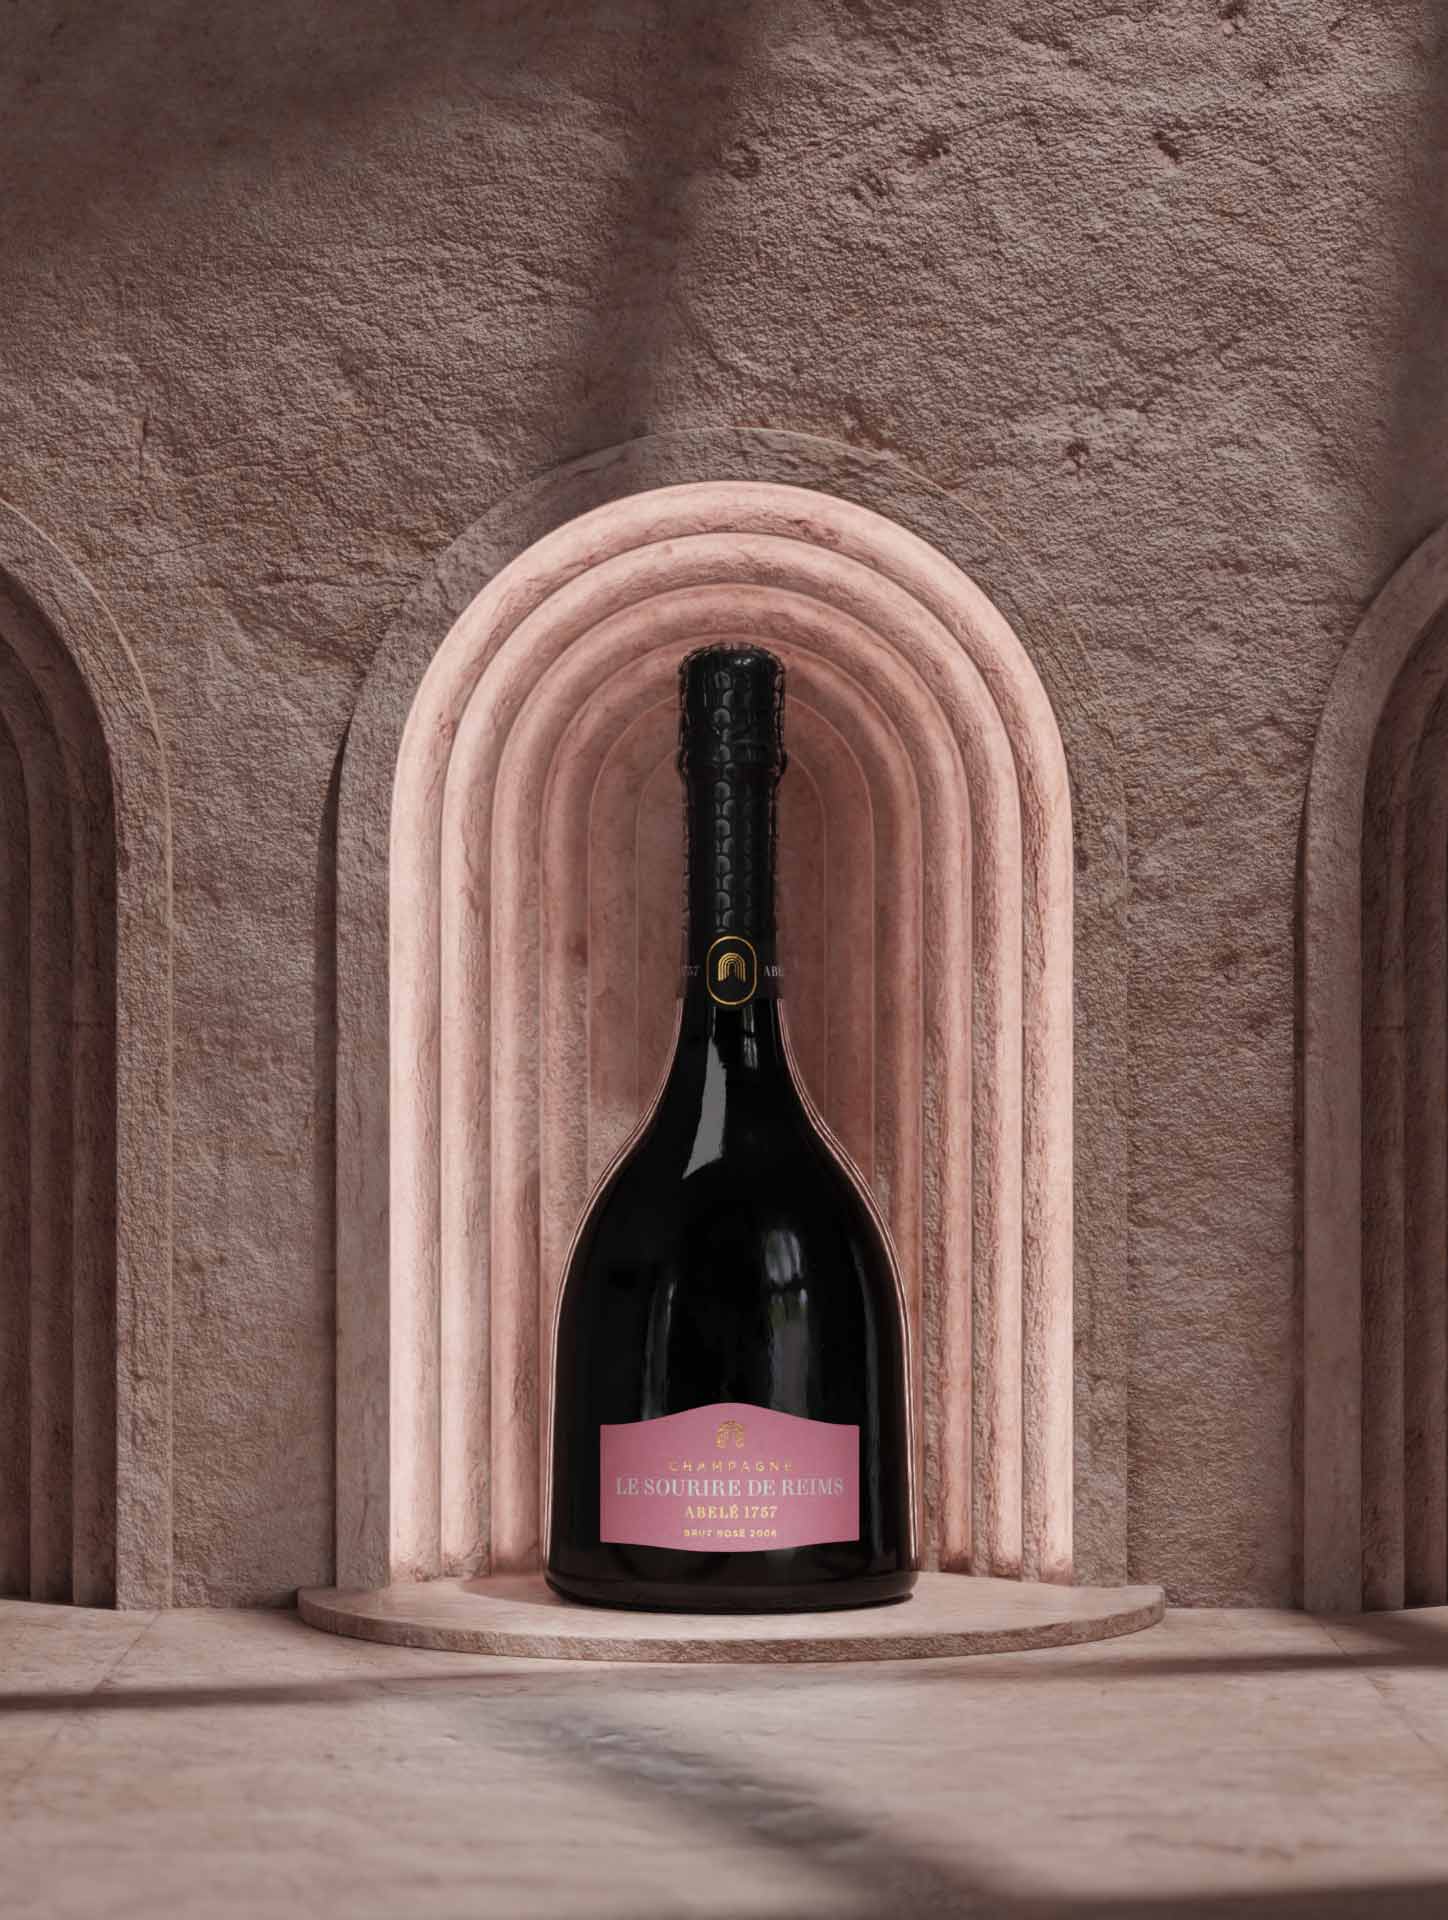 Bouteille de Sourire de Reims Rosé dans des arches | Réalisation Agence Discovery